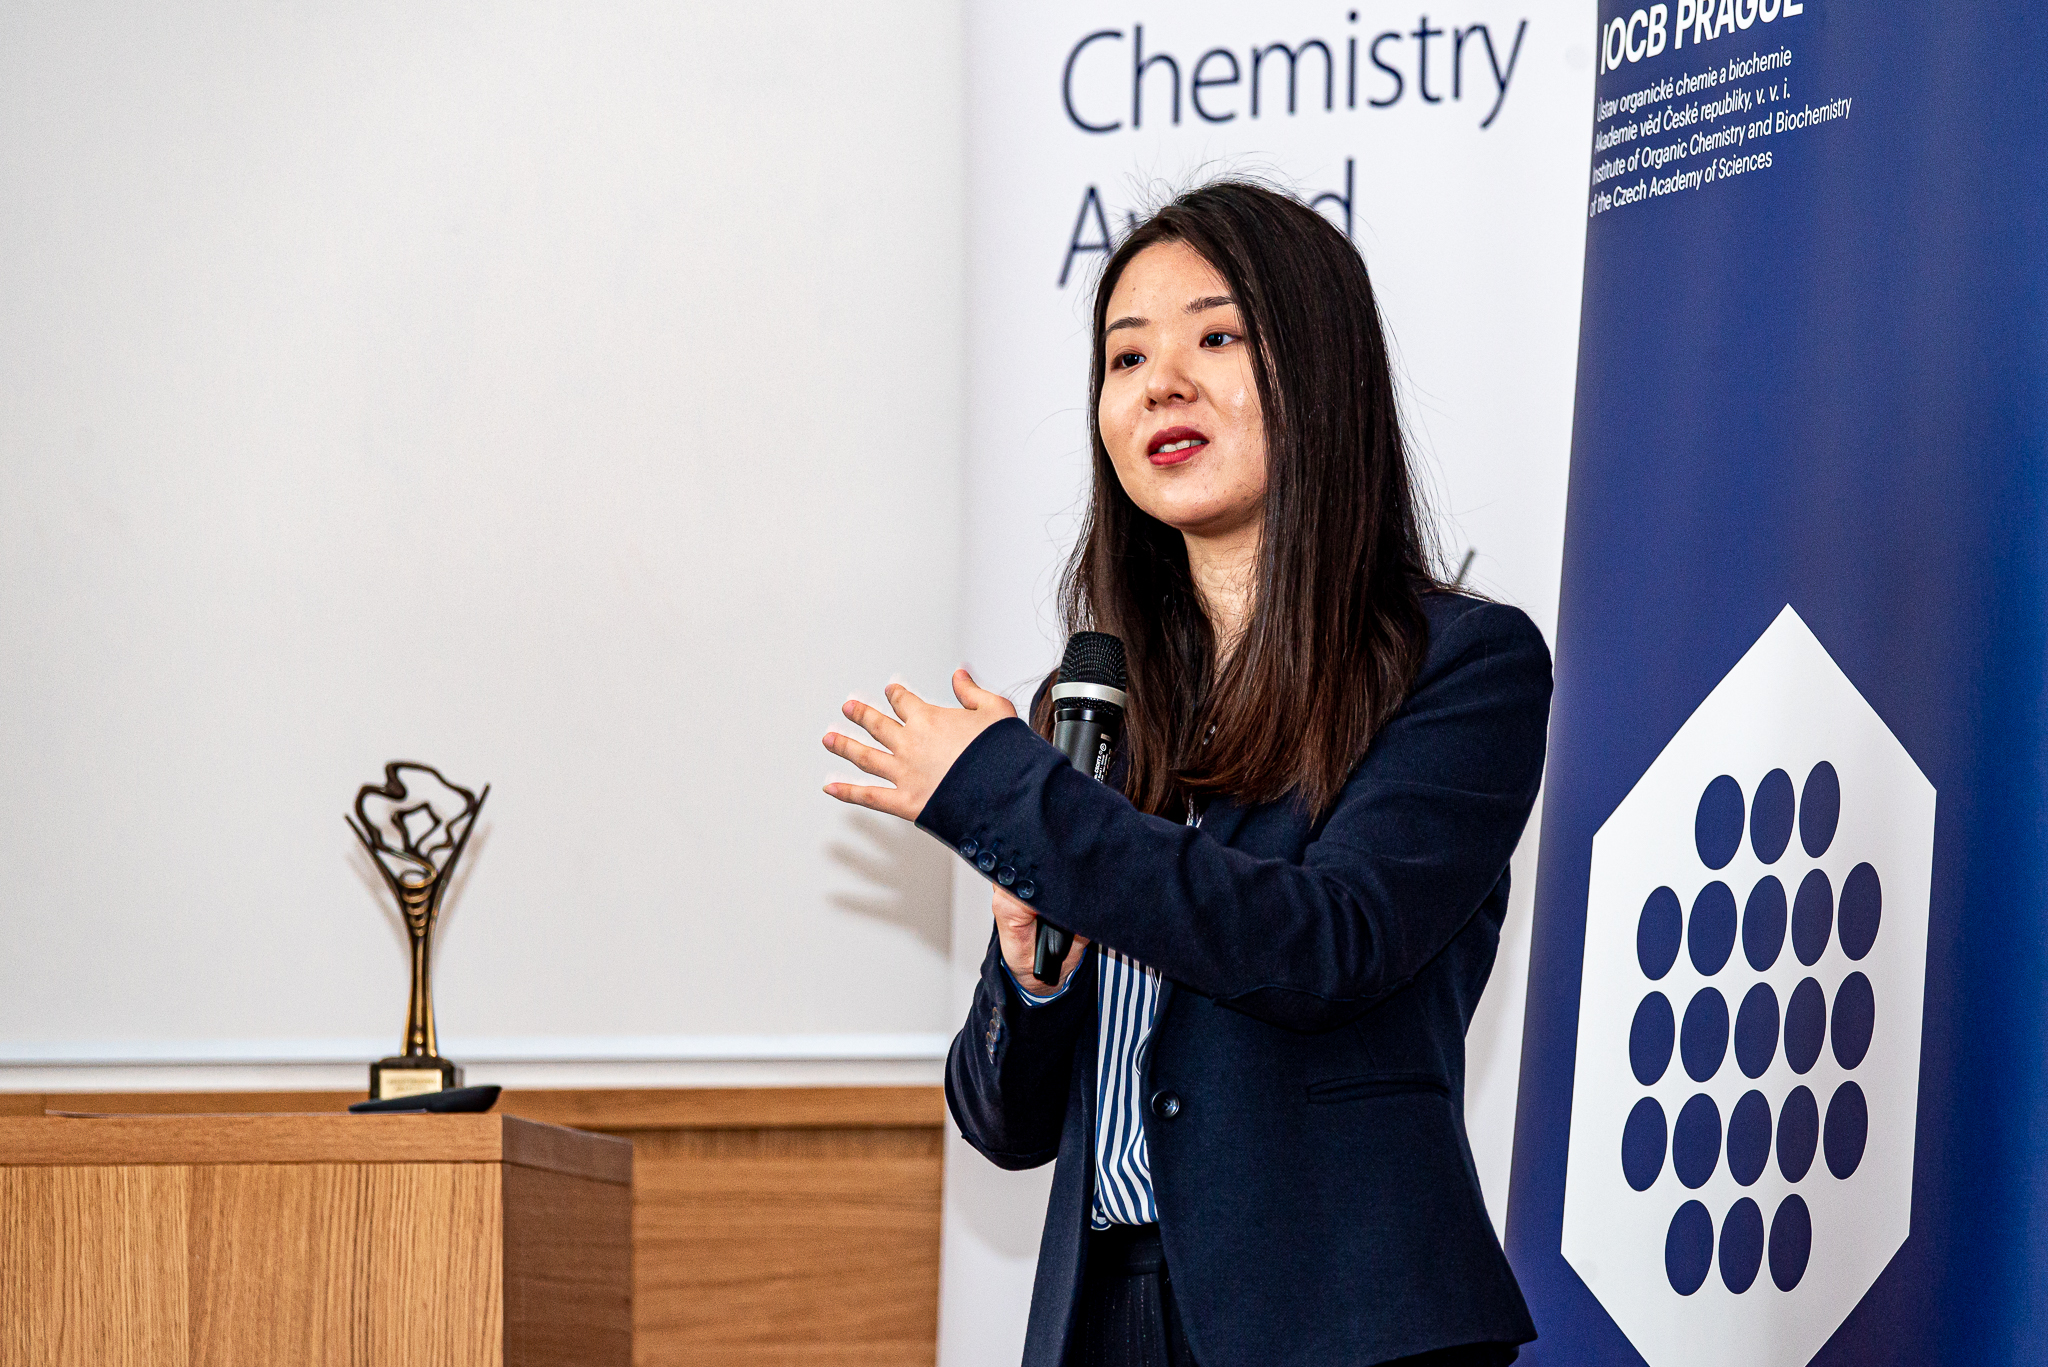 Vítězkou Dream Chemistry Award 2019 se stala Yujia Qing z Oxfordské univerzity